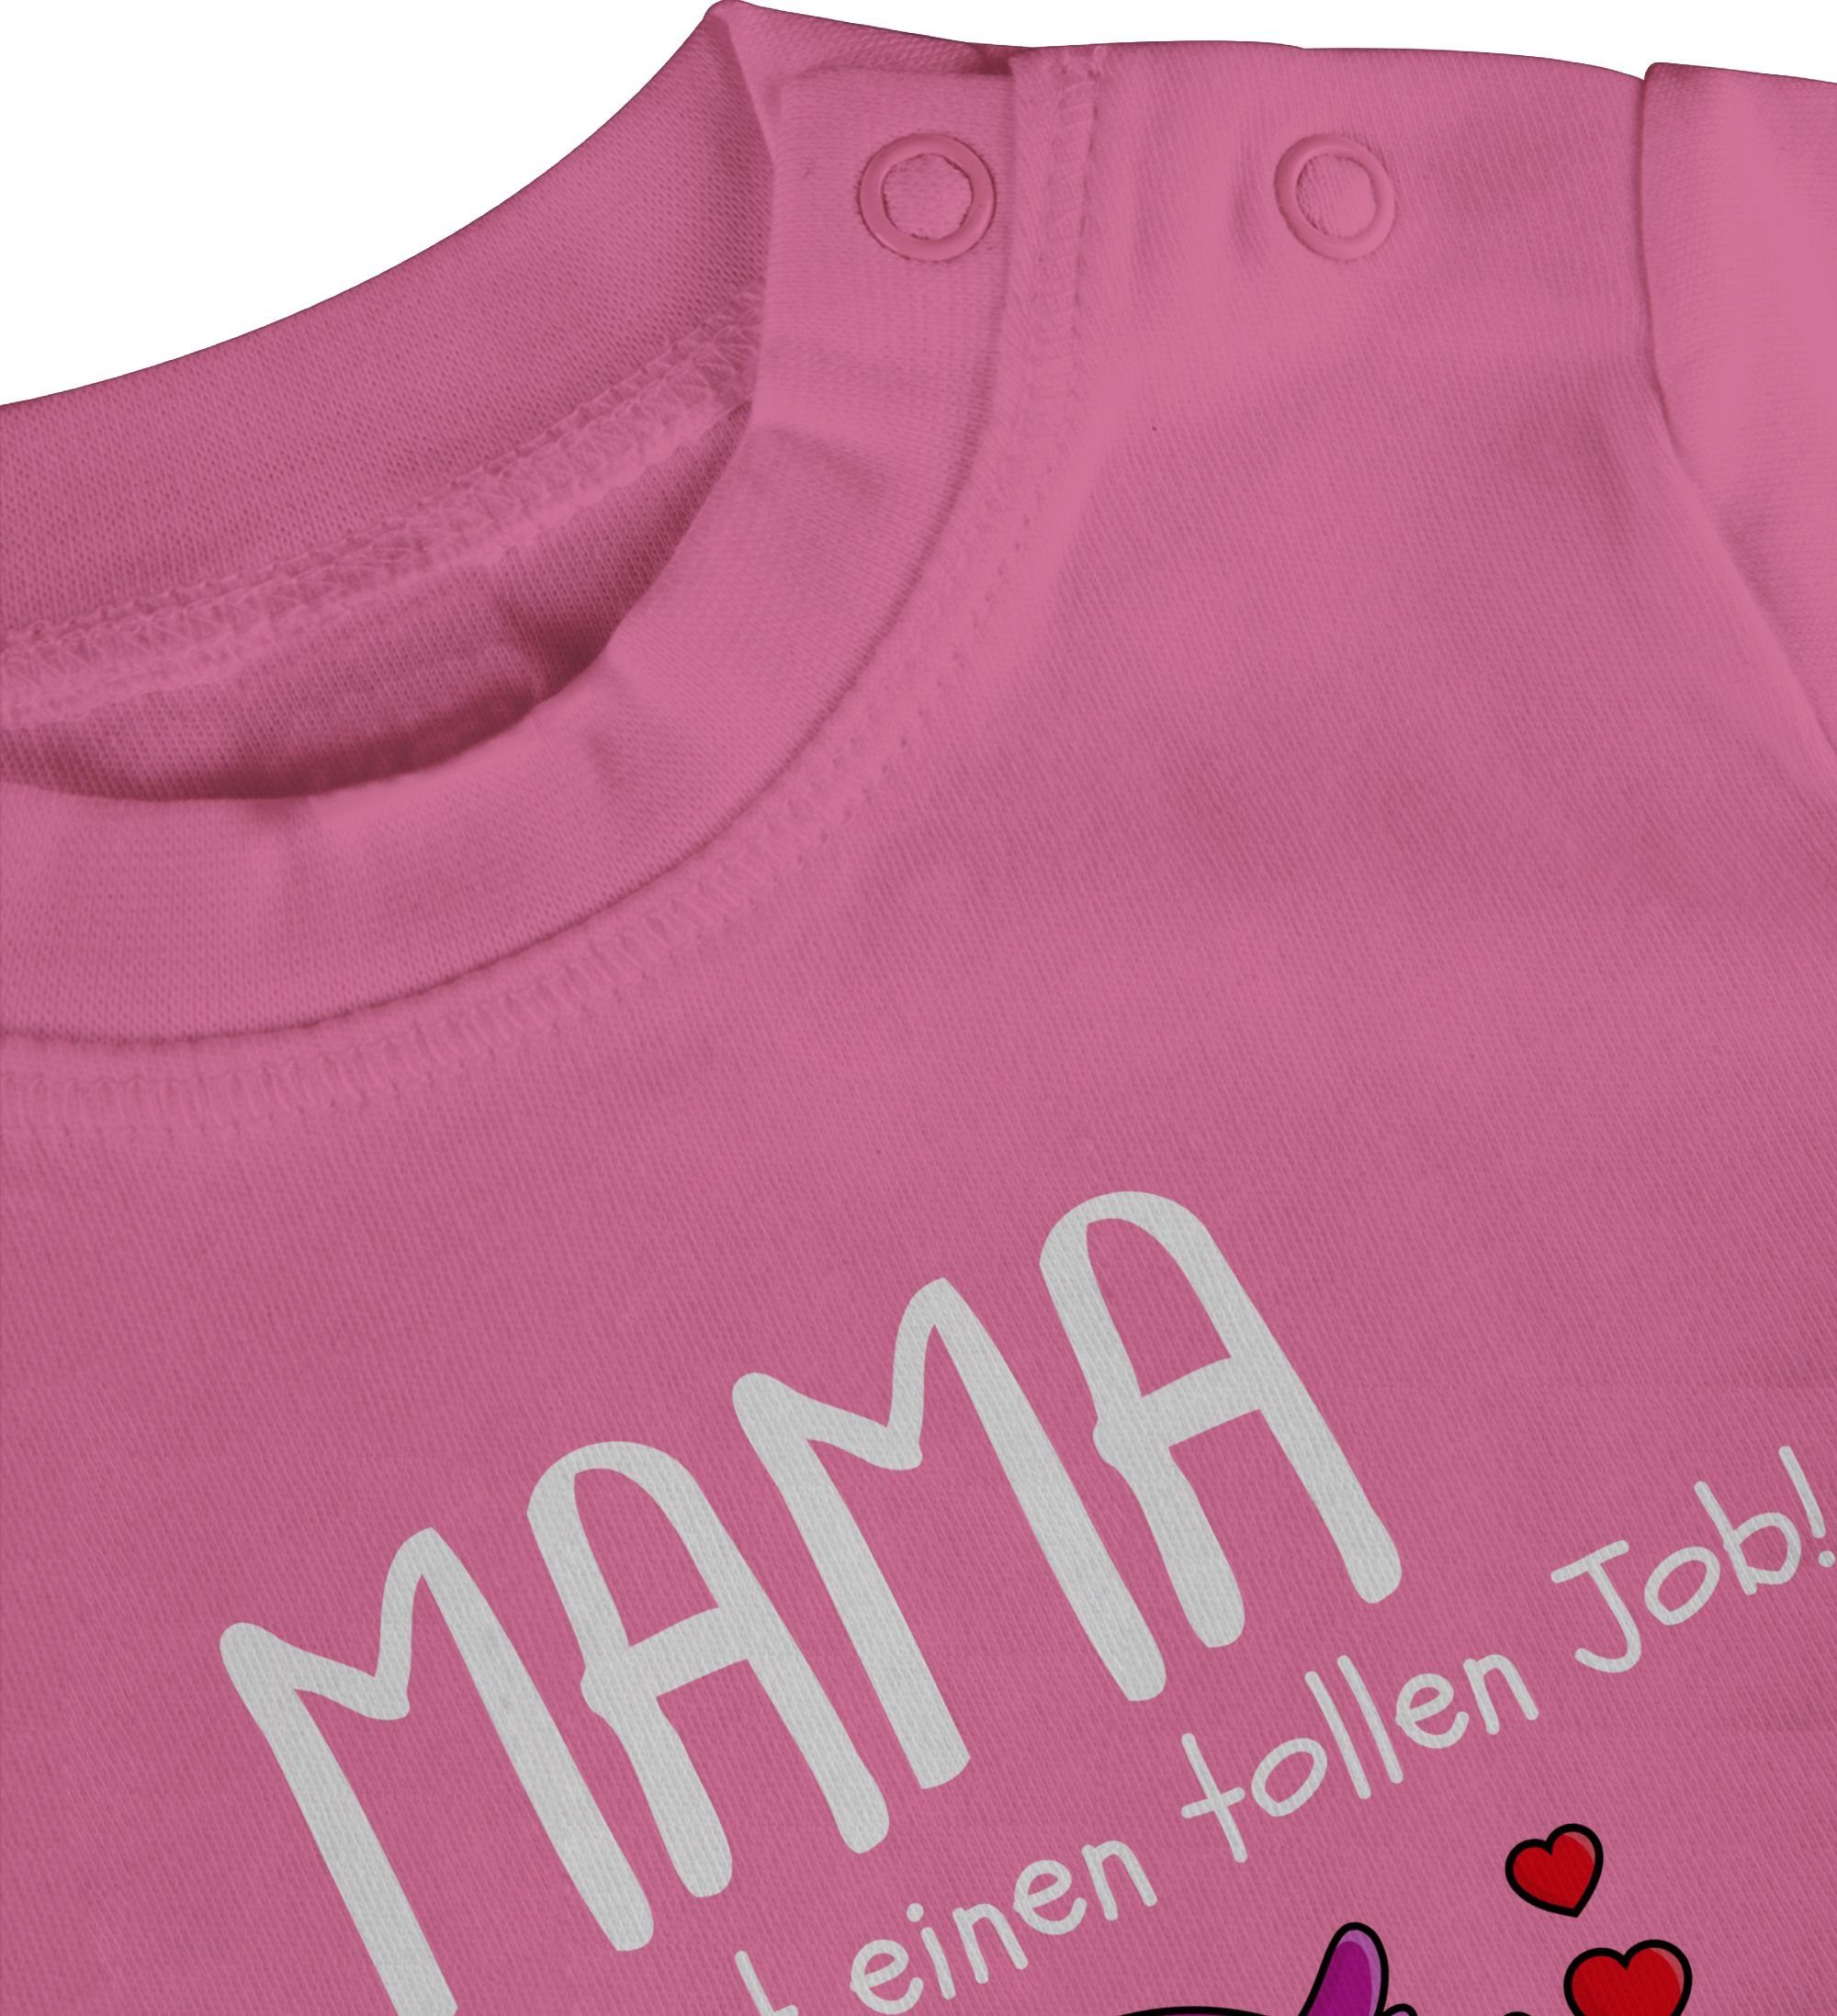 Pink Muttertagsgeschenk machst einen T-Shirt I Shirtracer 2 du Job 1. Mama tollen Muttertag